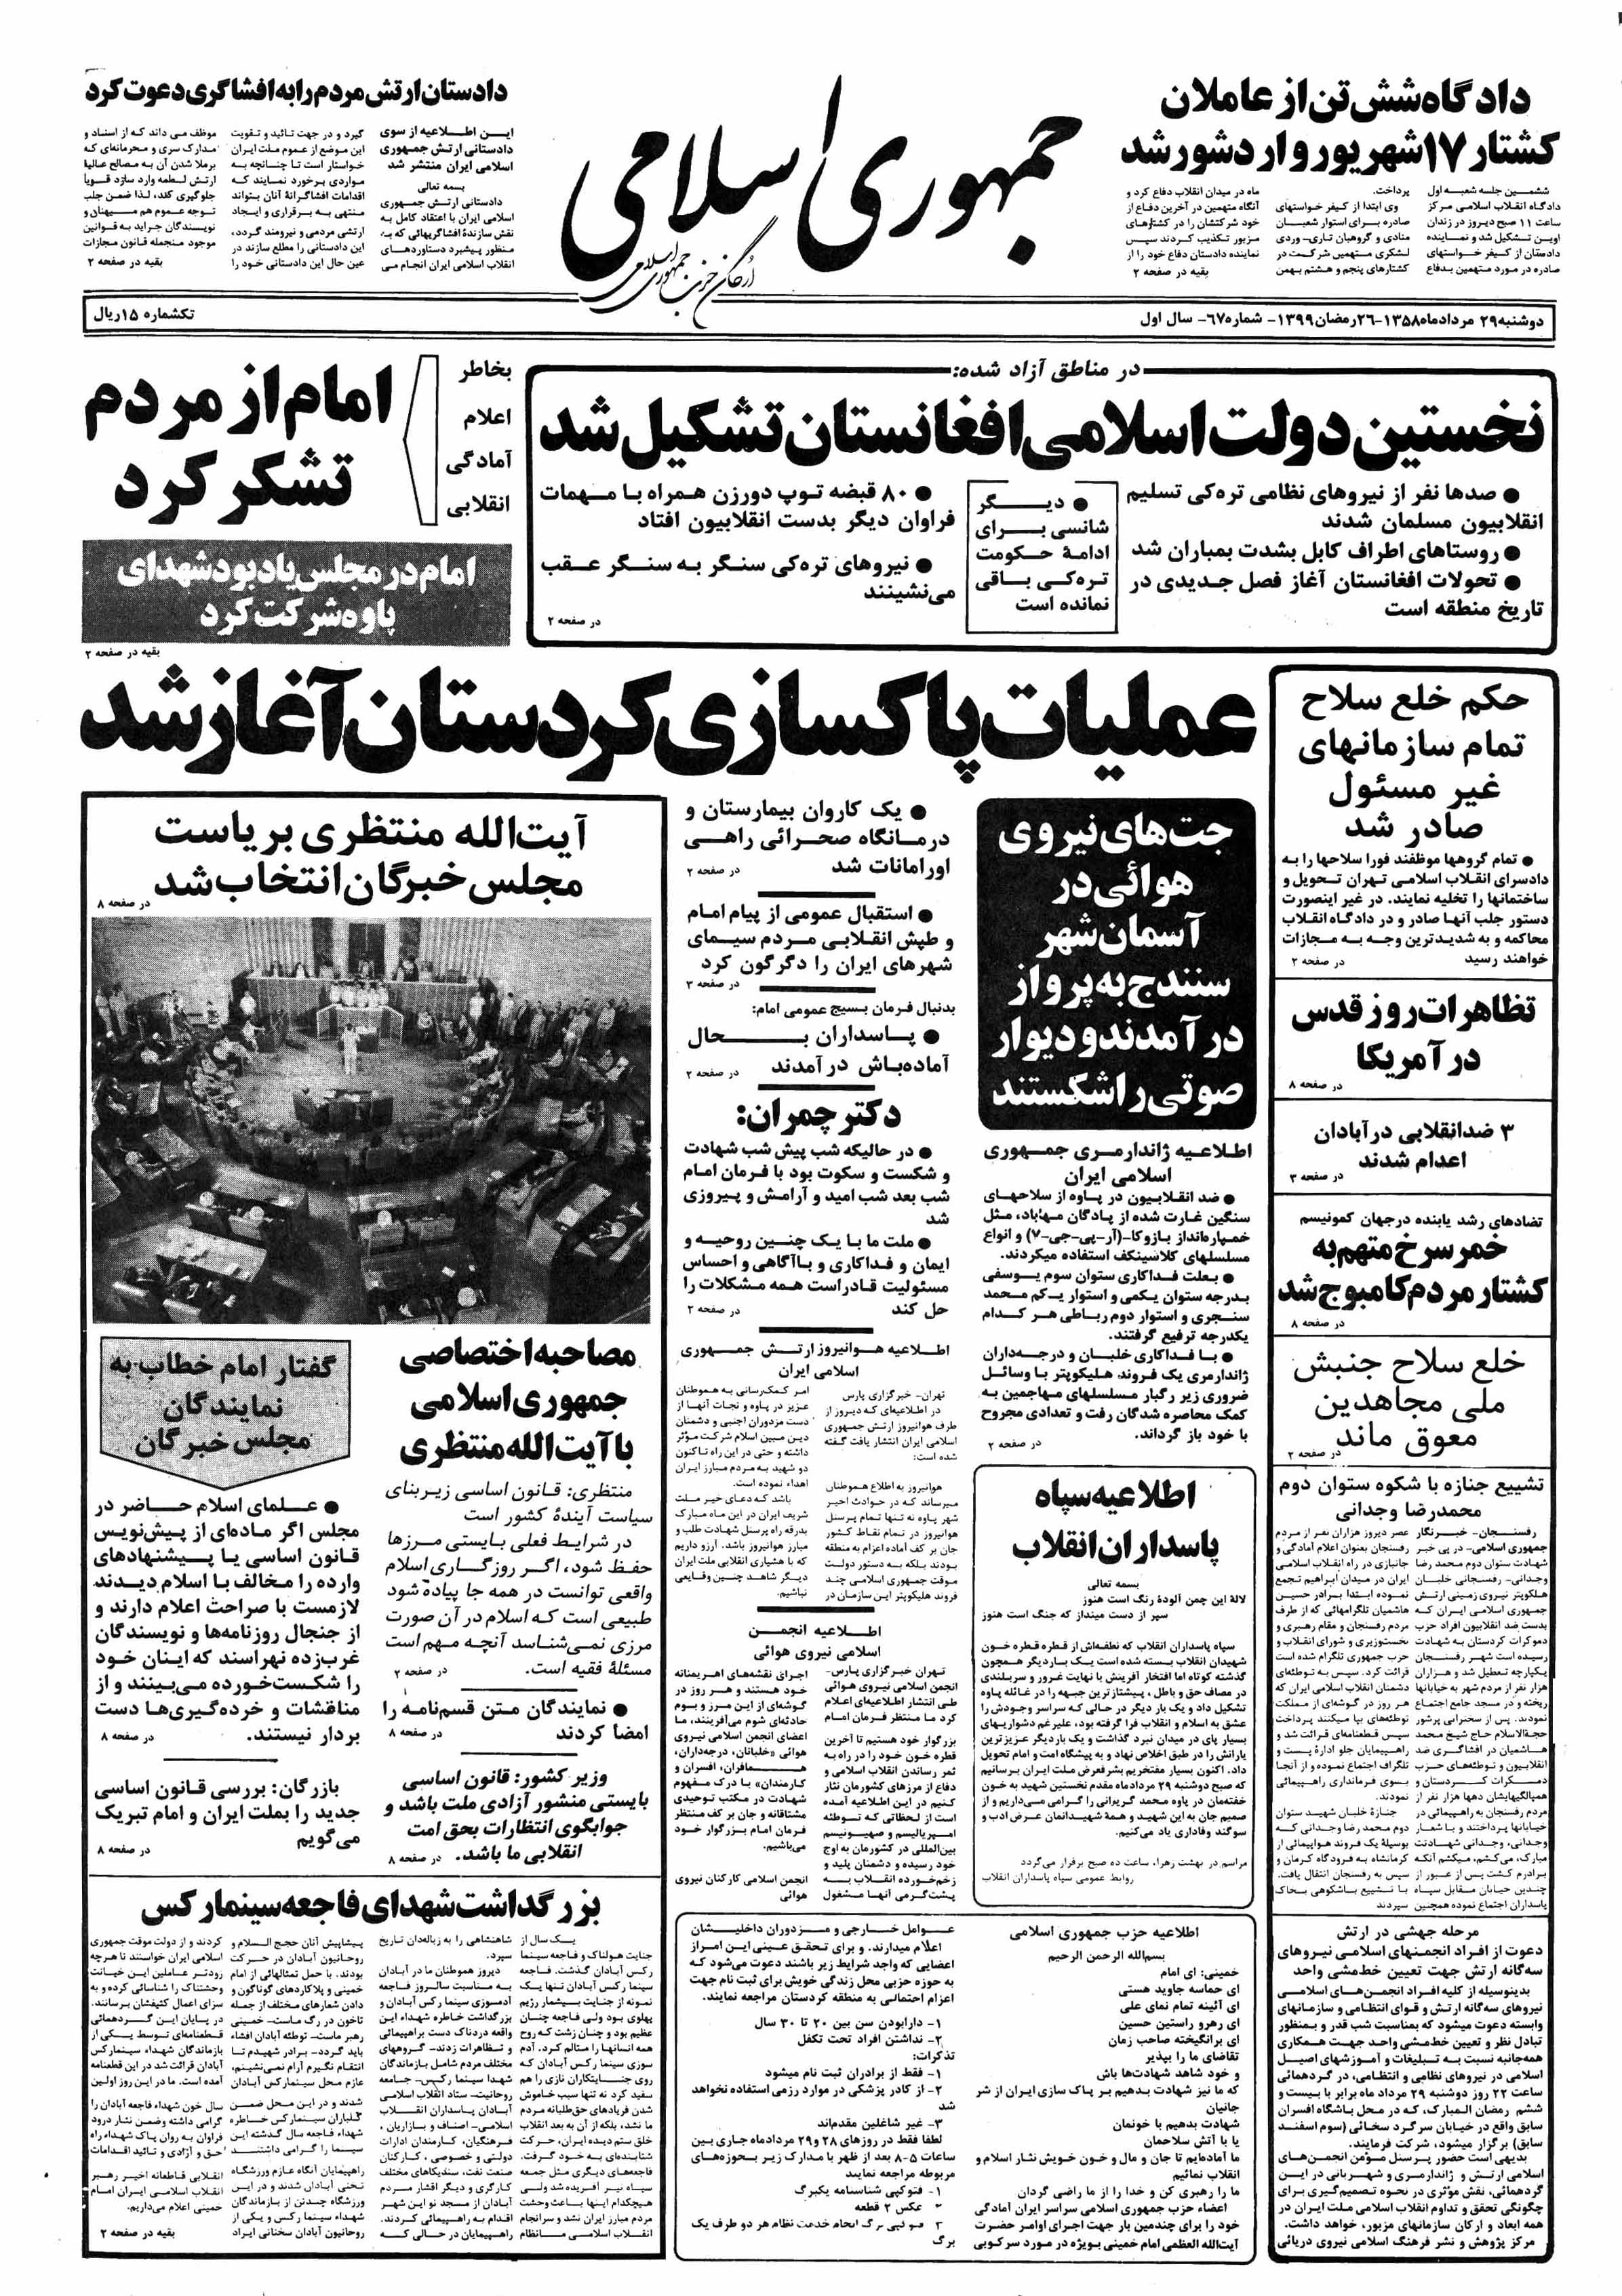 تصویر روزنامه جمهوری اسلامی ۲9 مرداد ۱۳۵۸